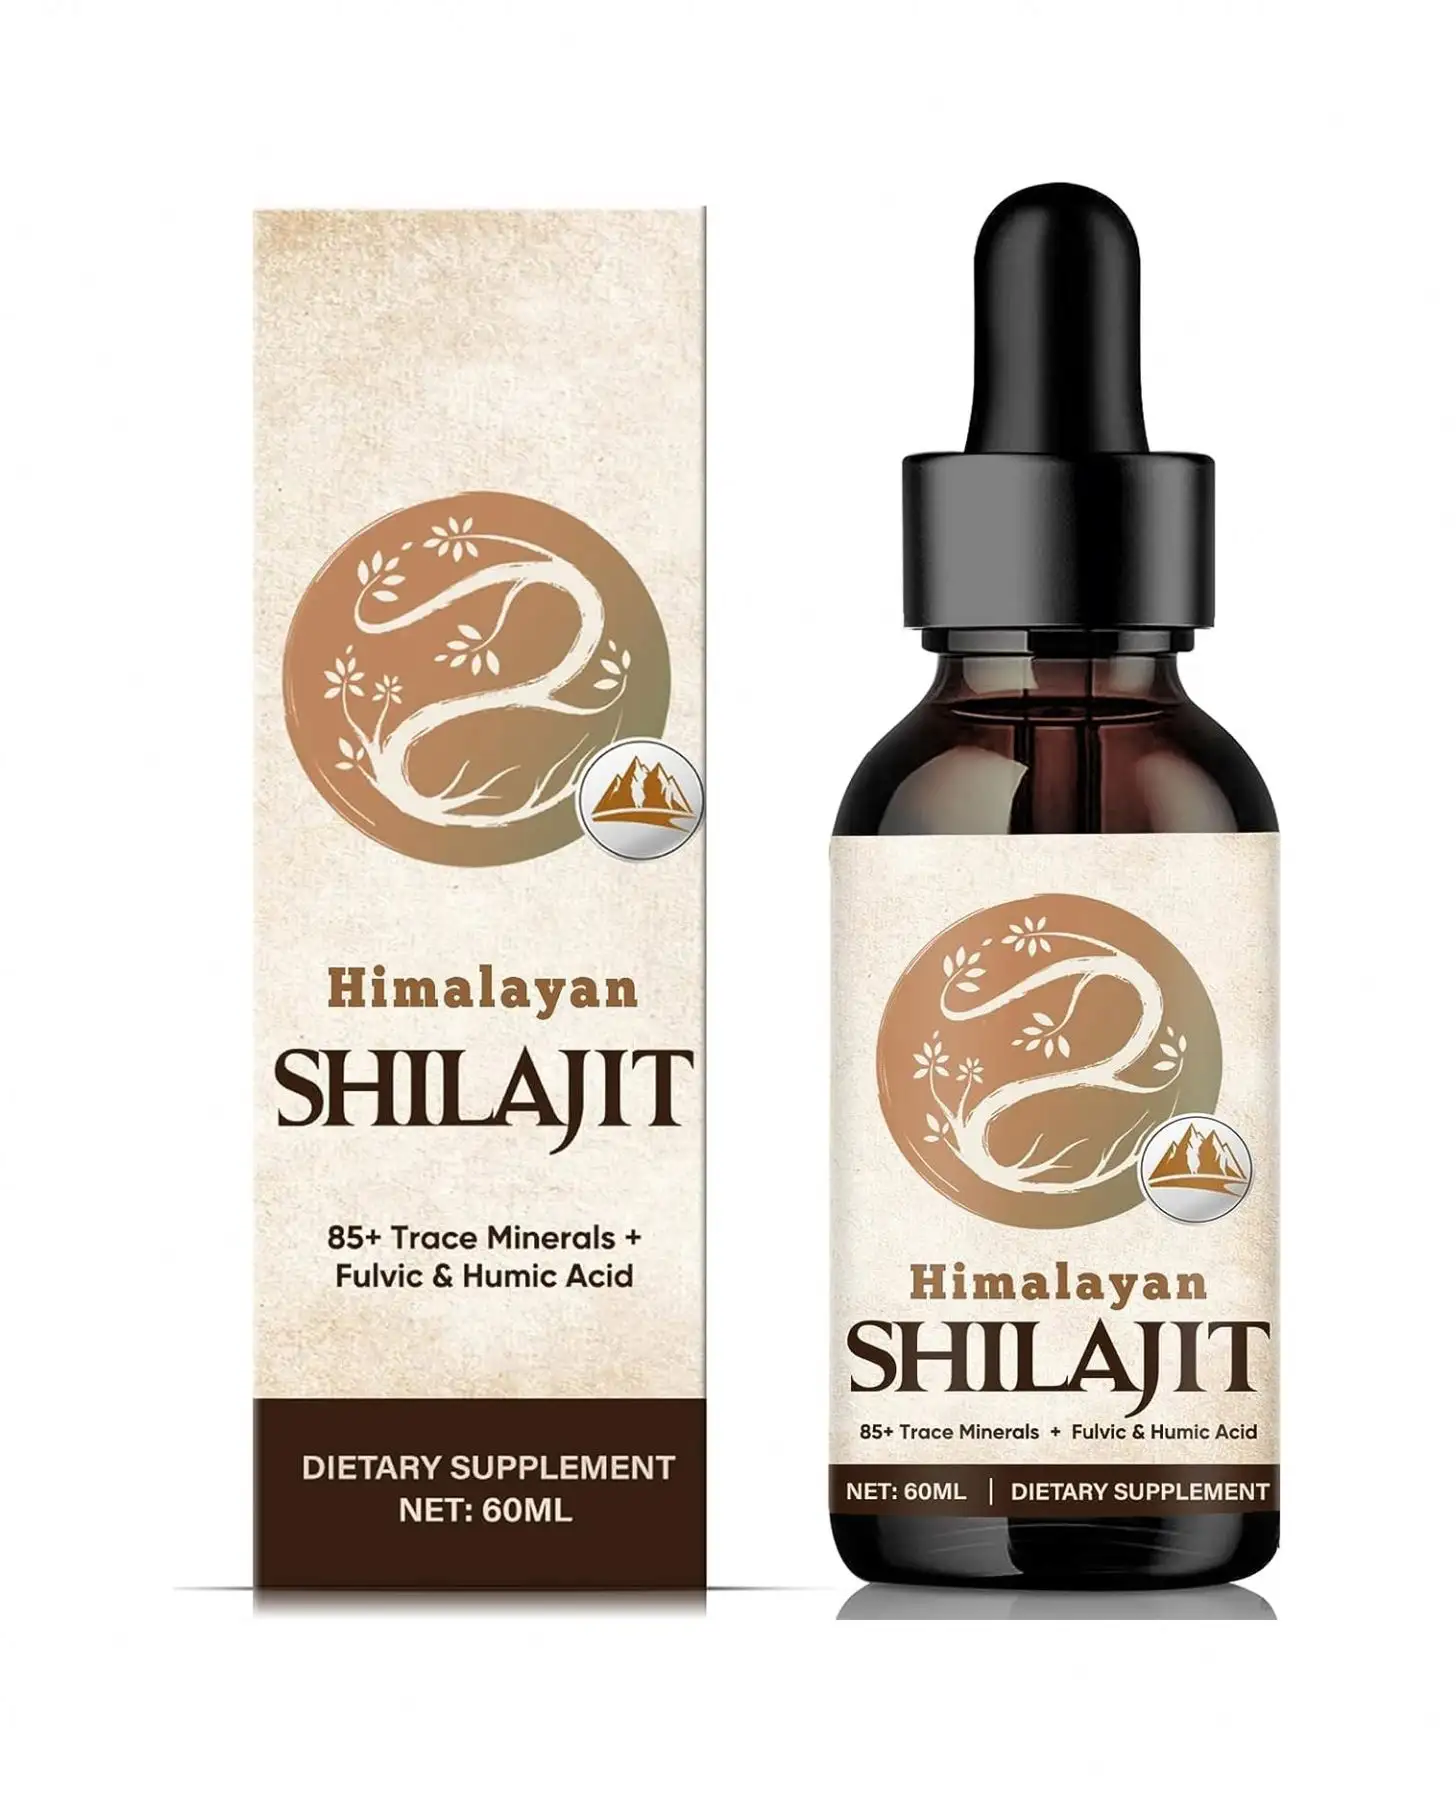 Potency doğal organik Shilajit reçine ile 85 + iz mineraller ve fulvik asit organik Shilajit reçine sıvı damla yağ